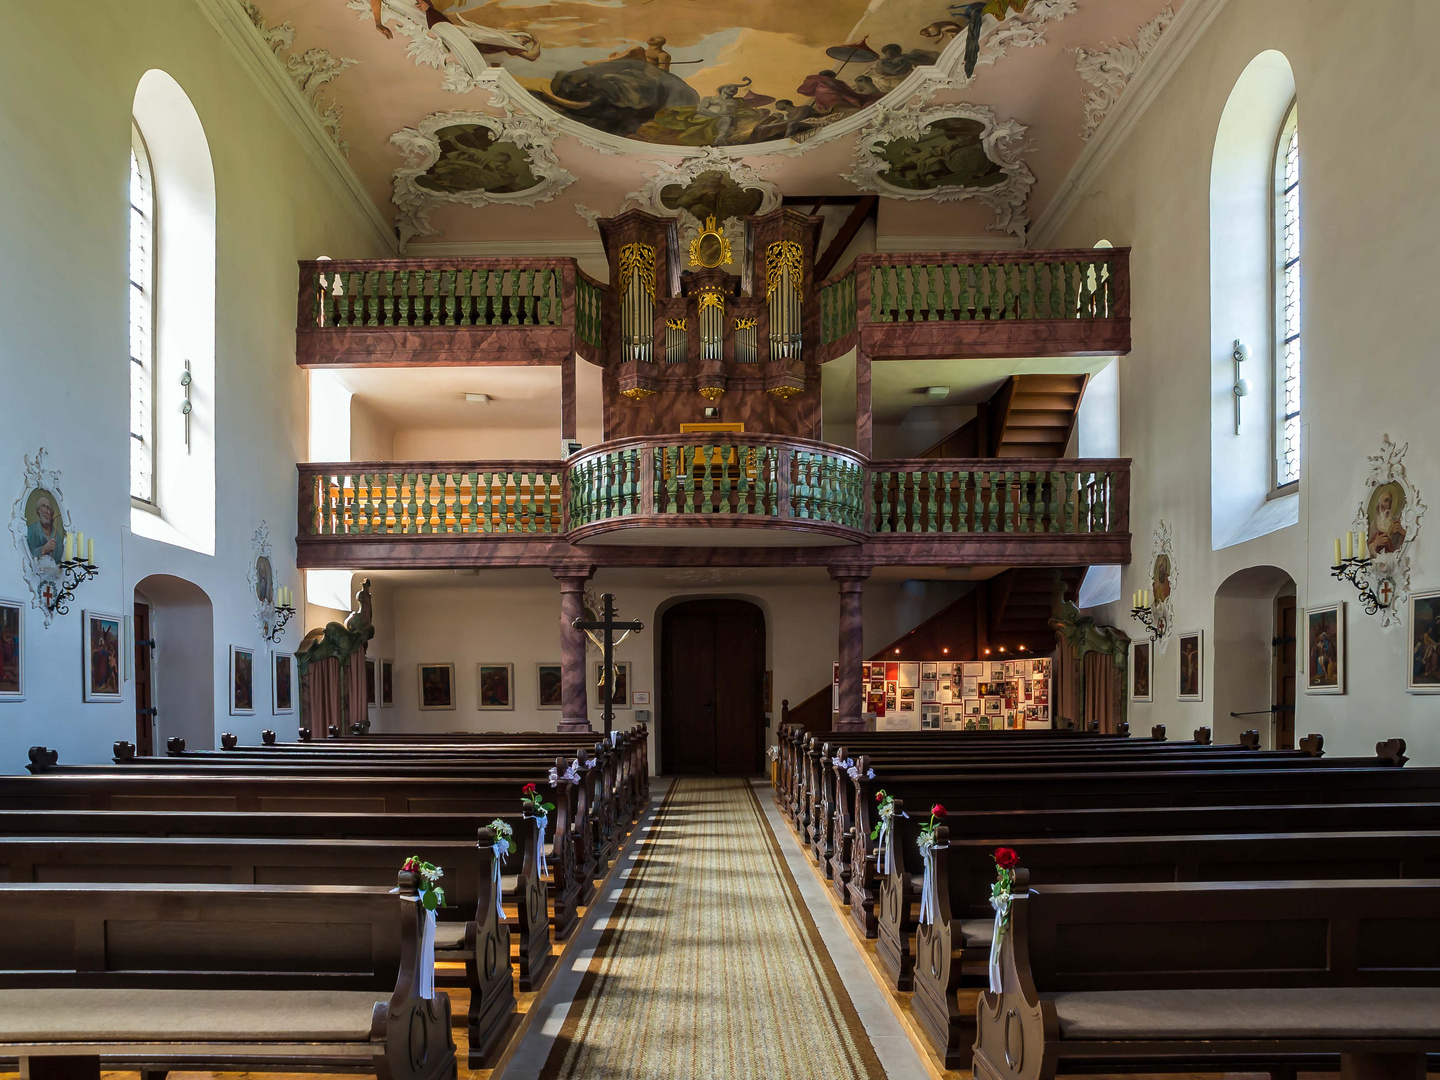 Orgel in der Wallfahrtskirche